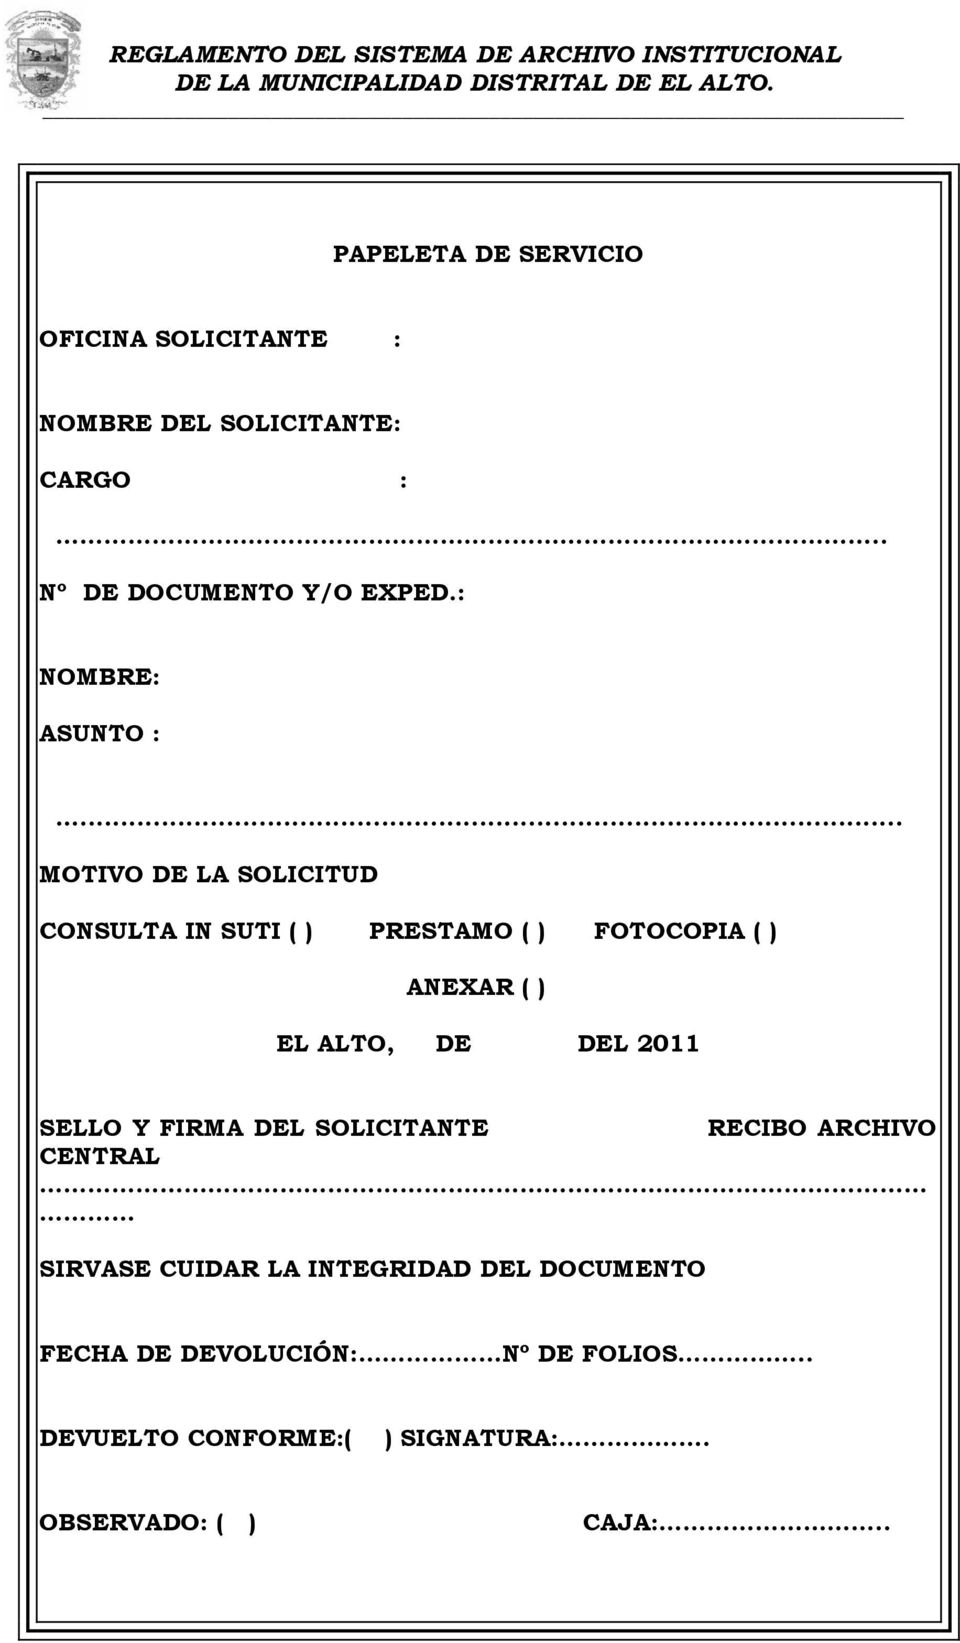 .. MOTIVO DE LA SOLICITUD CONSULTA IN SUTI ( ) PRESTAMO ( ) FOTOCOPIA ( ) ANEXAR ( ) EL ALTO, DE DEL